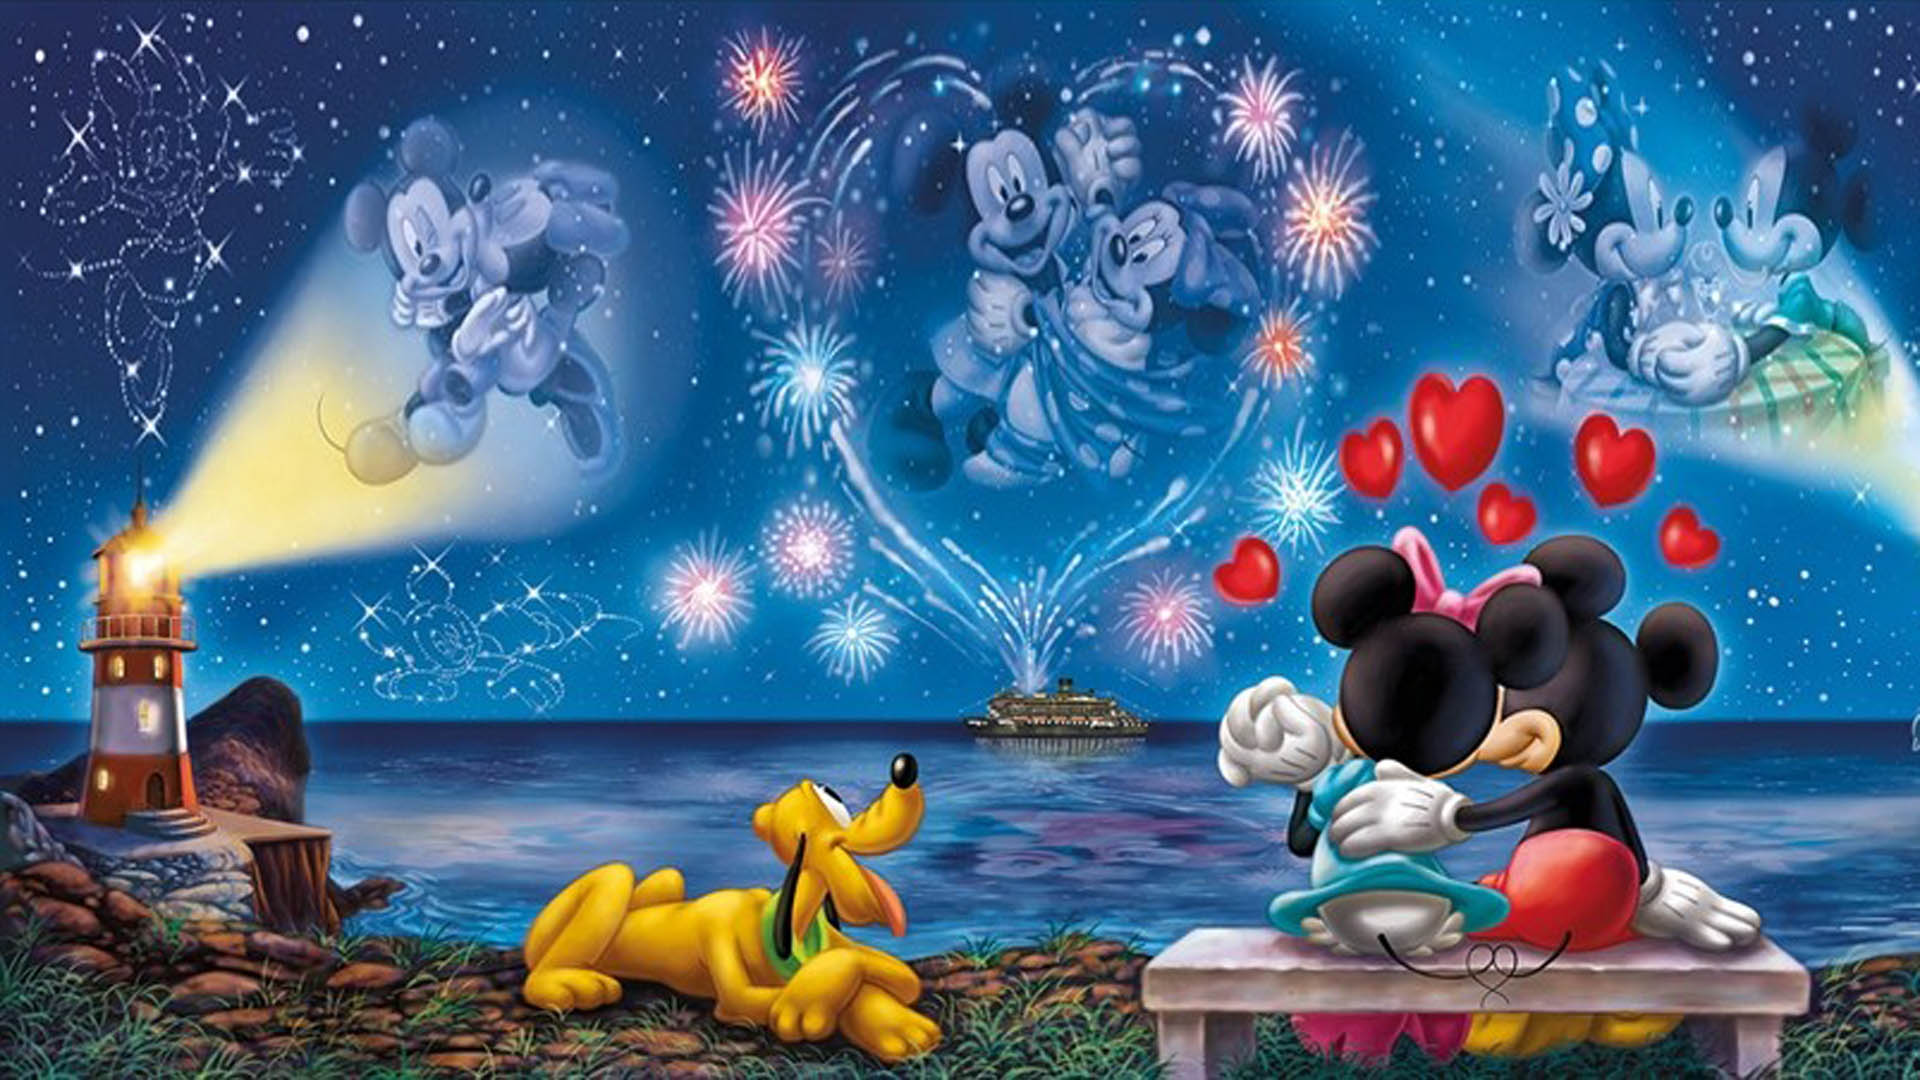 Walt Disney Mickey And Minnie Love Couple Wallpaper Hd 1920x1080 :  